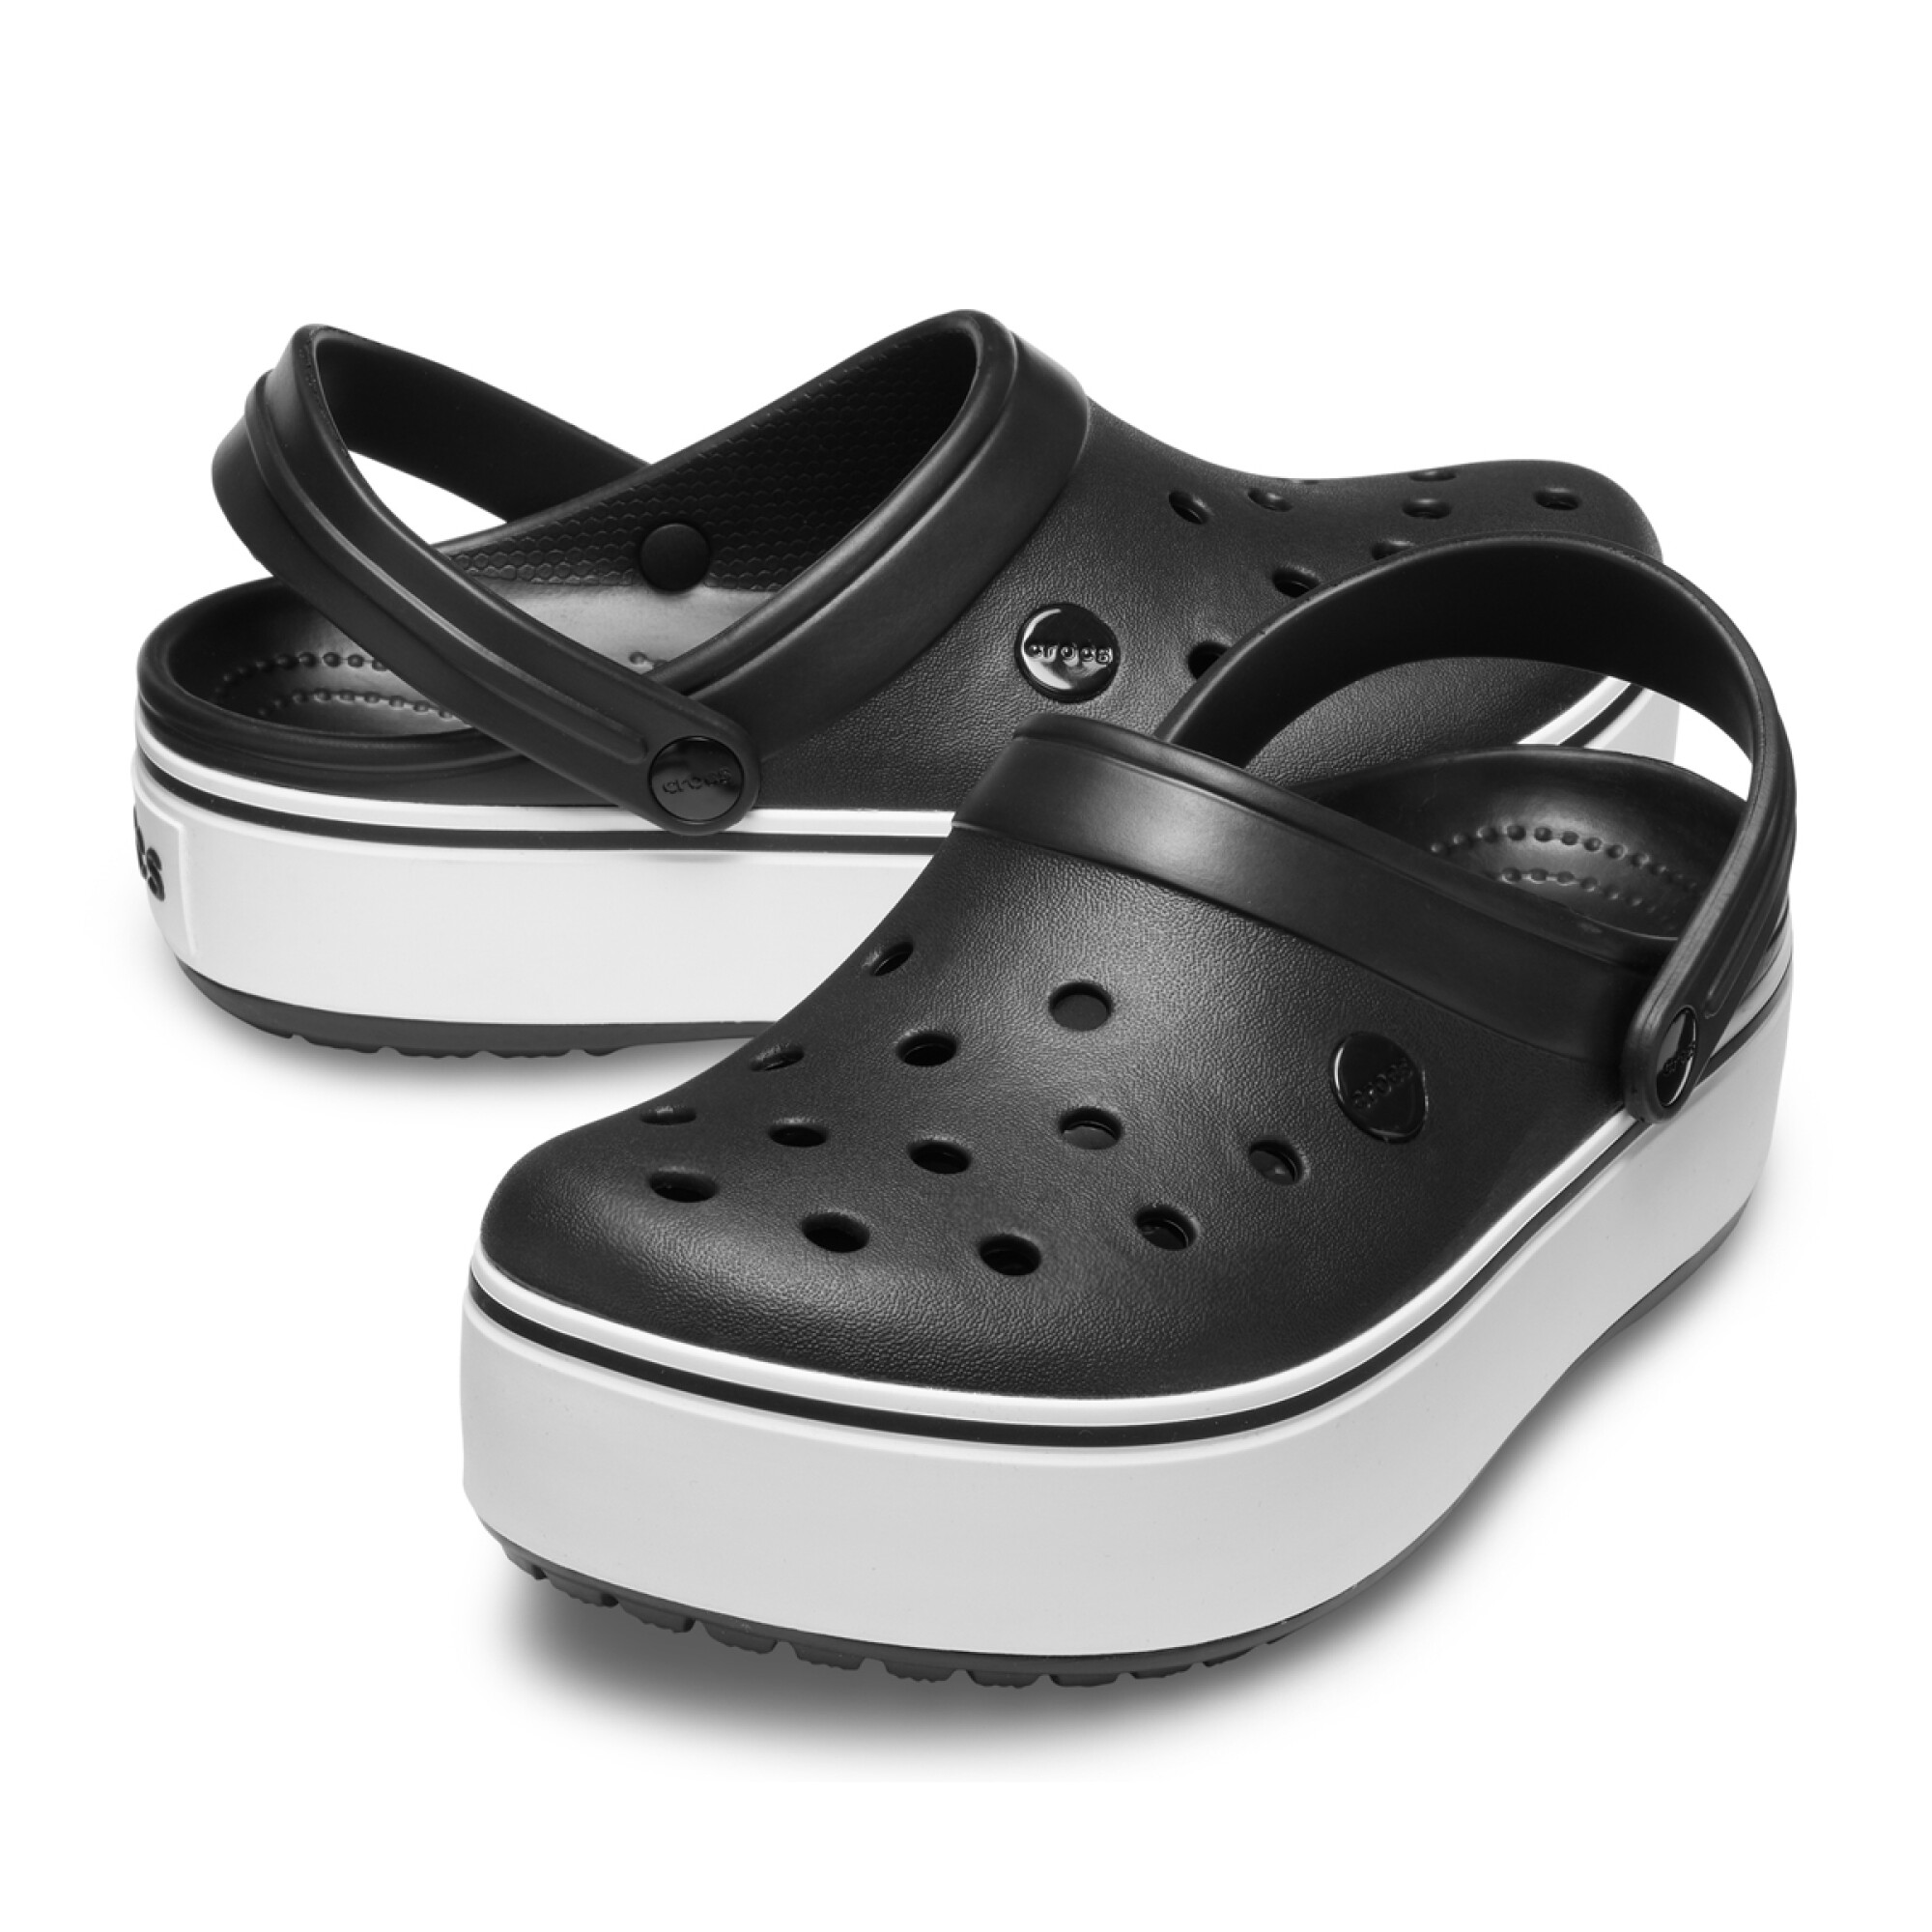 Кроксы на платформе женские. Крокс Крокбэнд. Crocs Crocband platform. Crocs Crocband Clog Black. Сабо Crocs Crocband Clog белые.